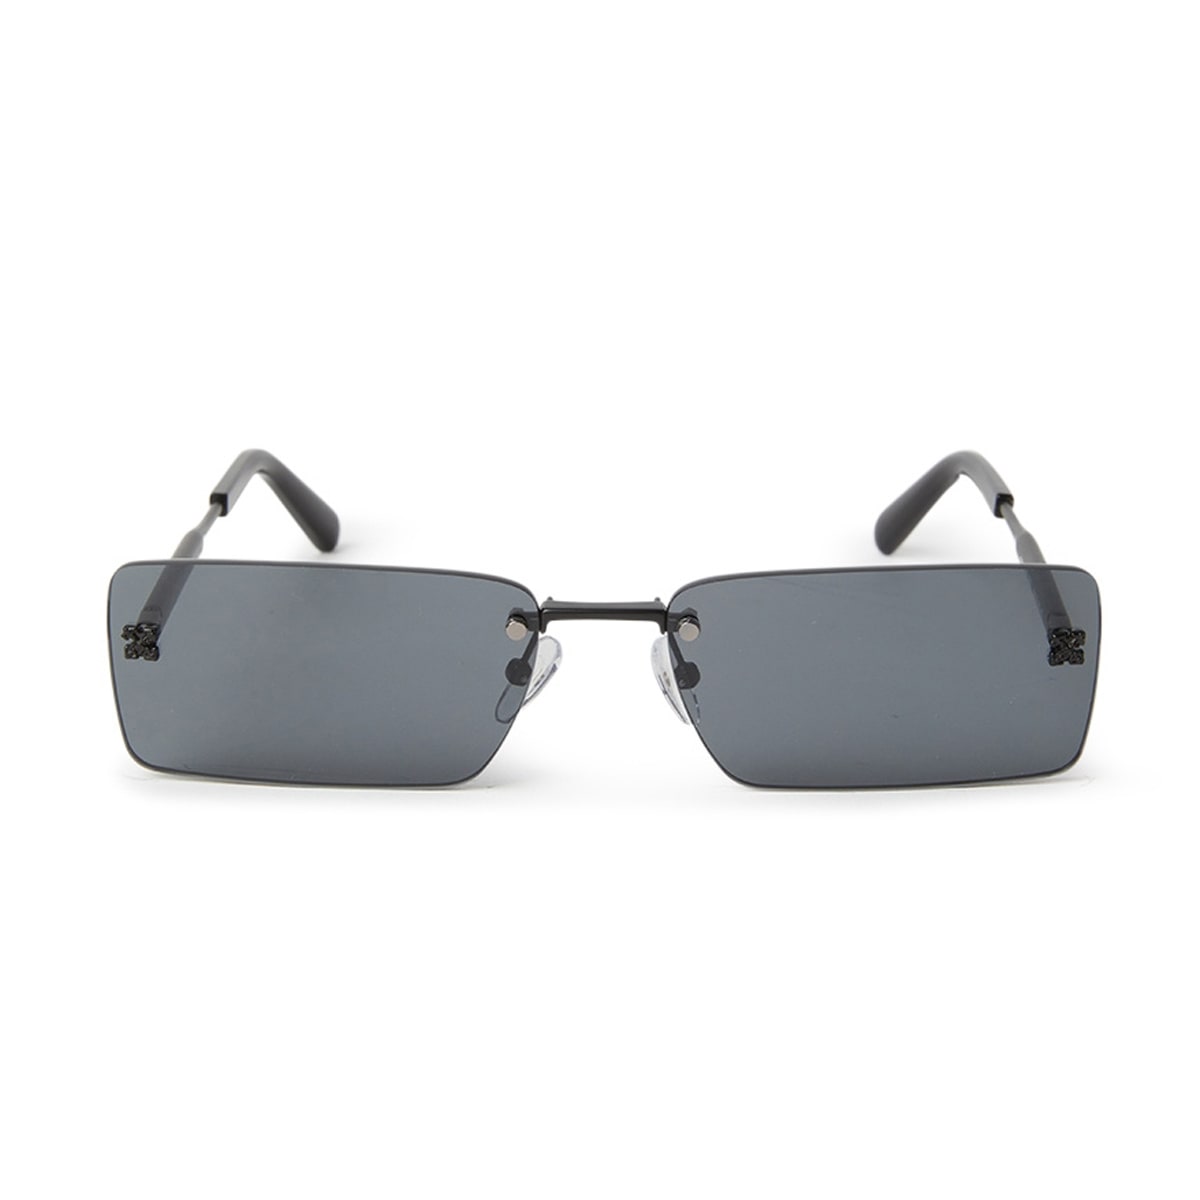 Off-White Riccione Sunglasses Black Sunglasses